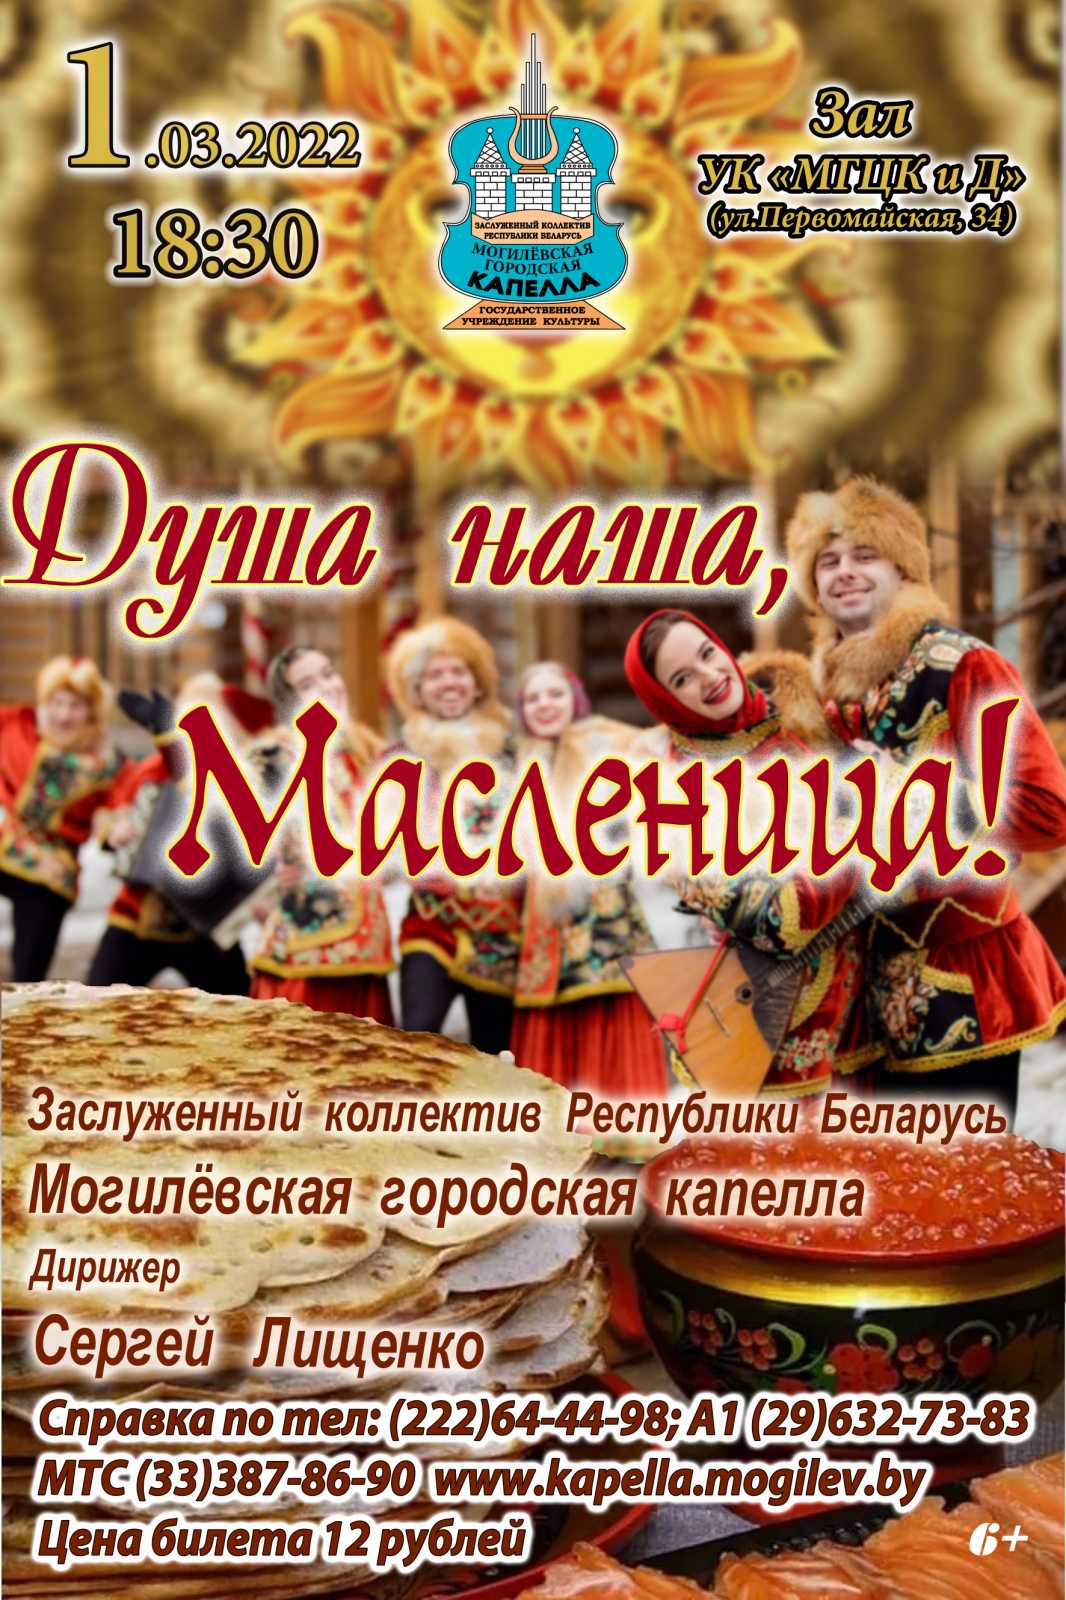 Концертную программу «Душа наша, Масленица!» готовит Могилевская городская капелла